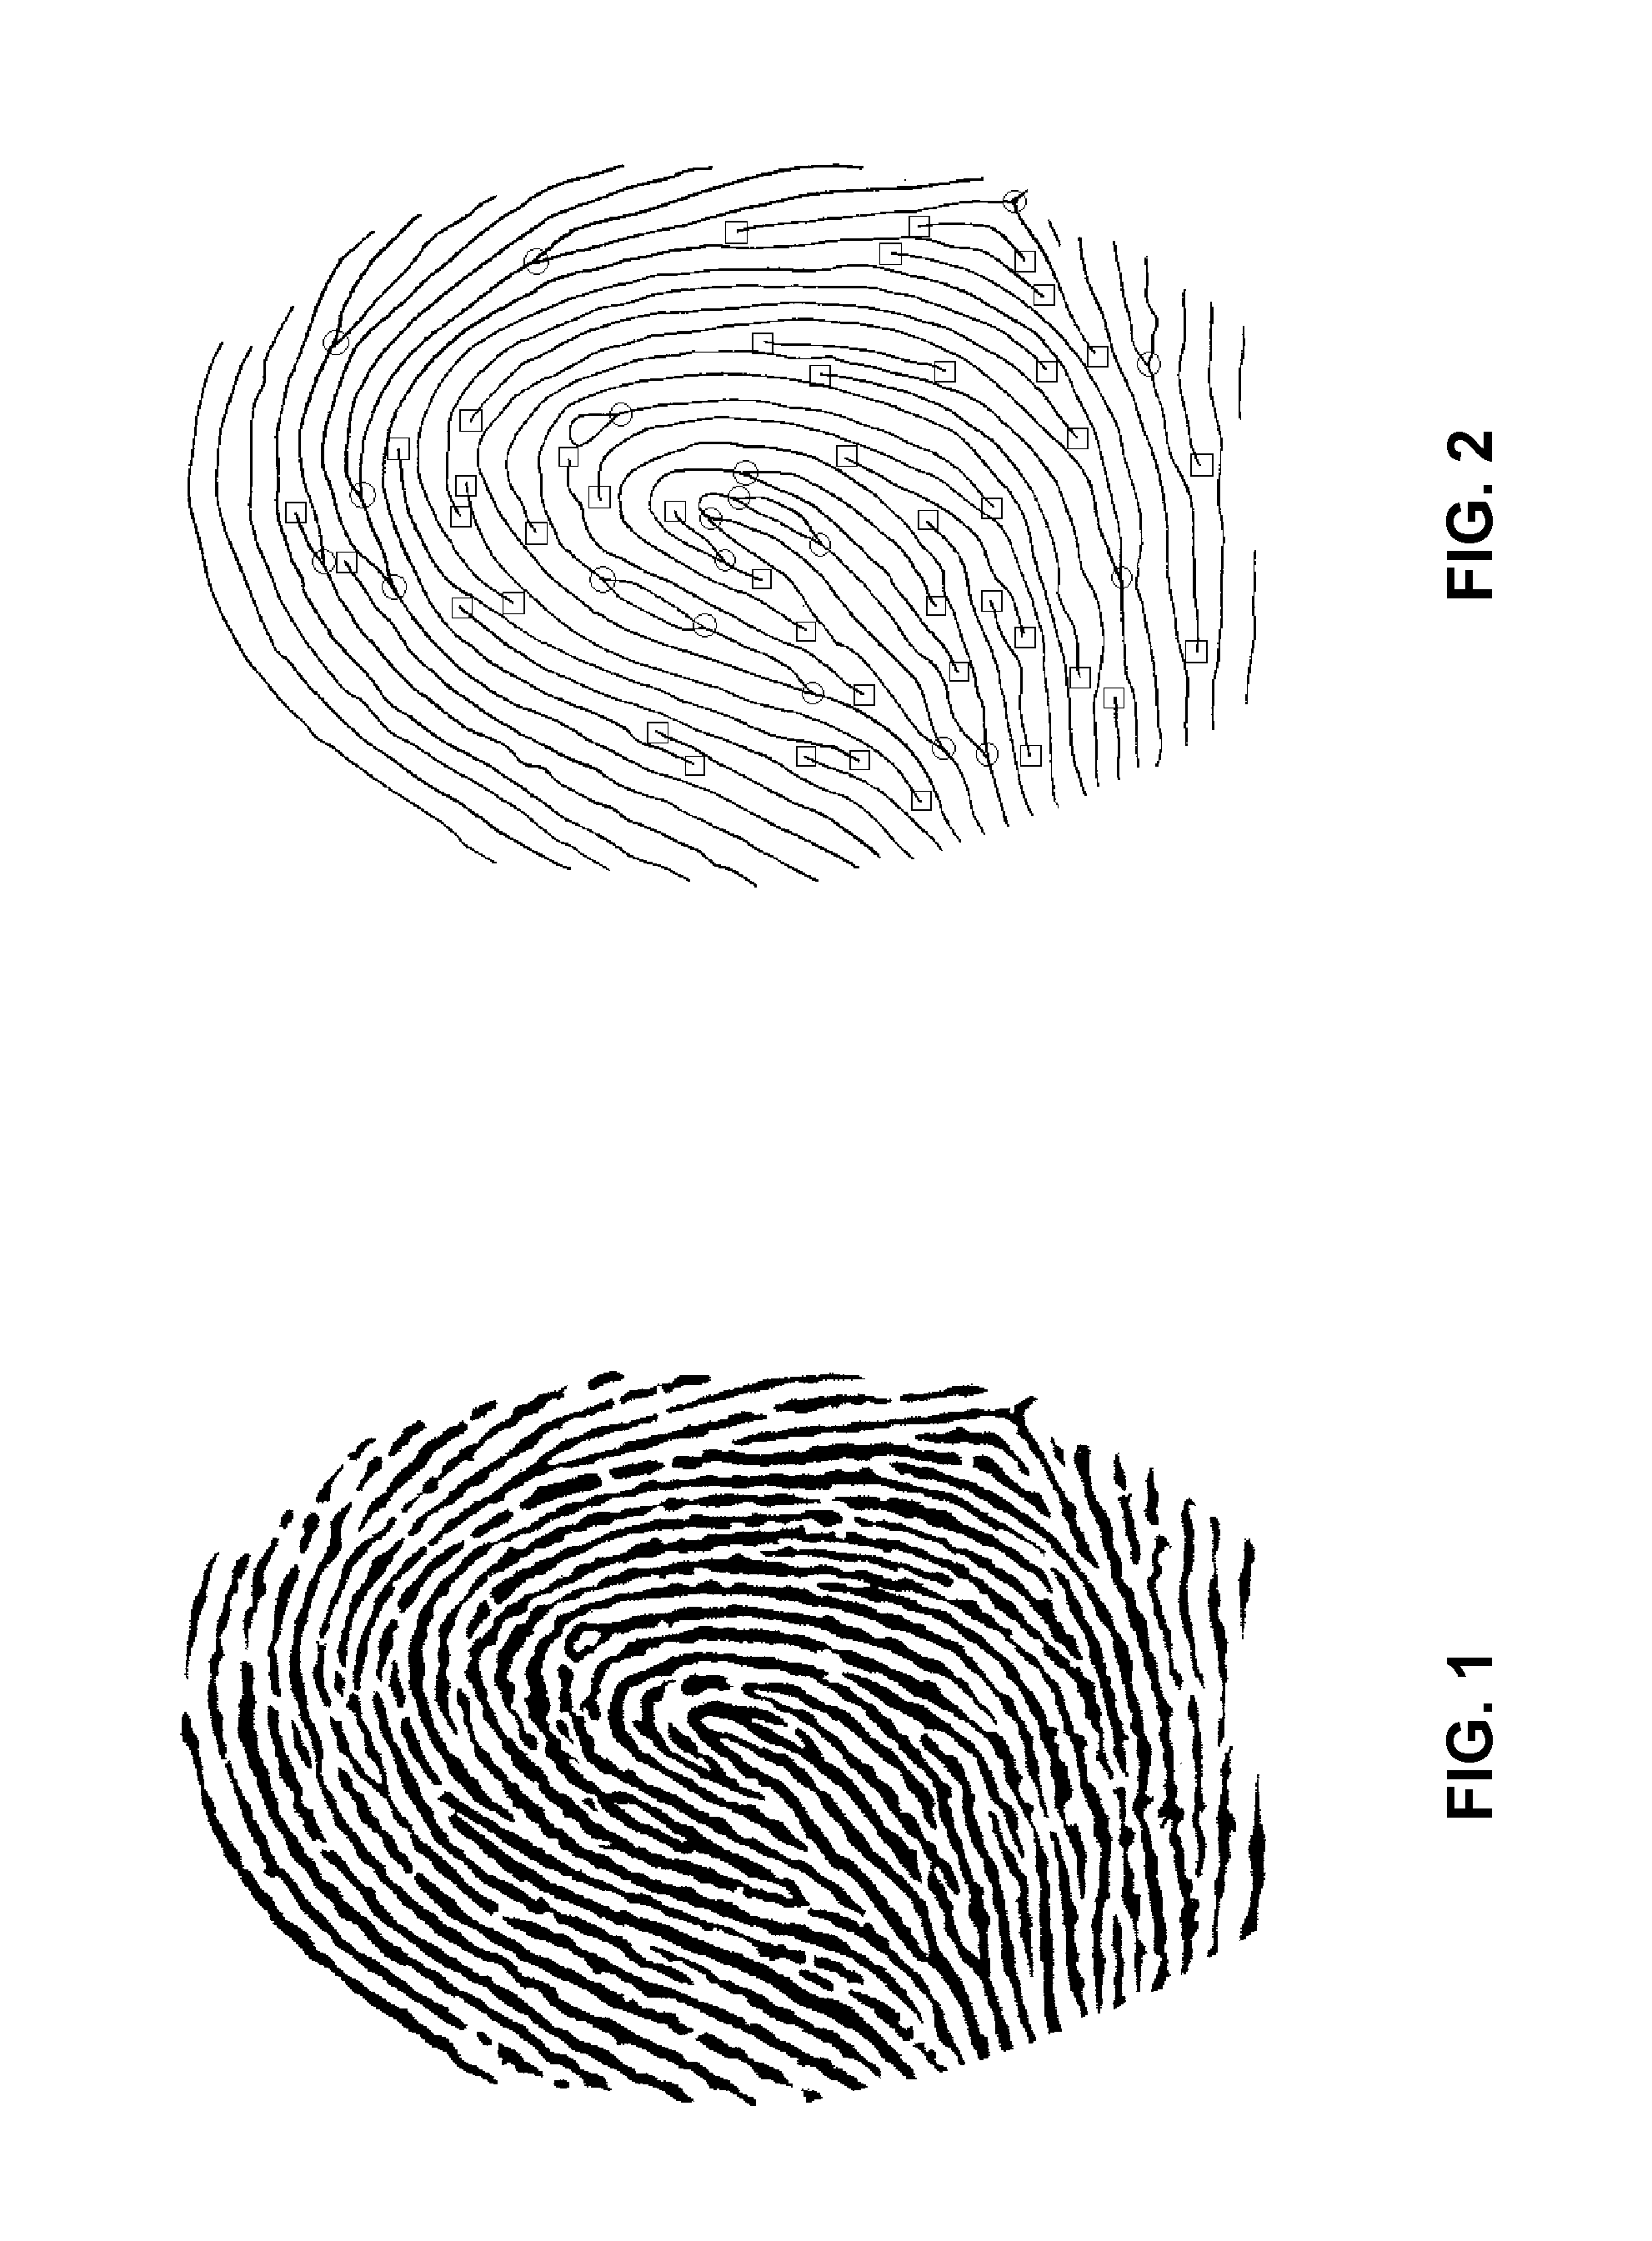 Fingerprint enrolment algorithm